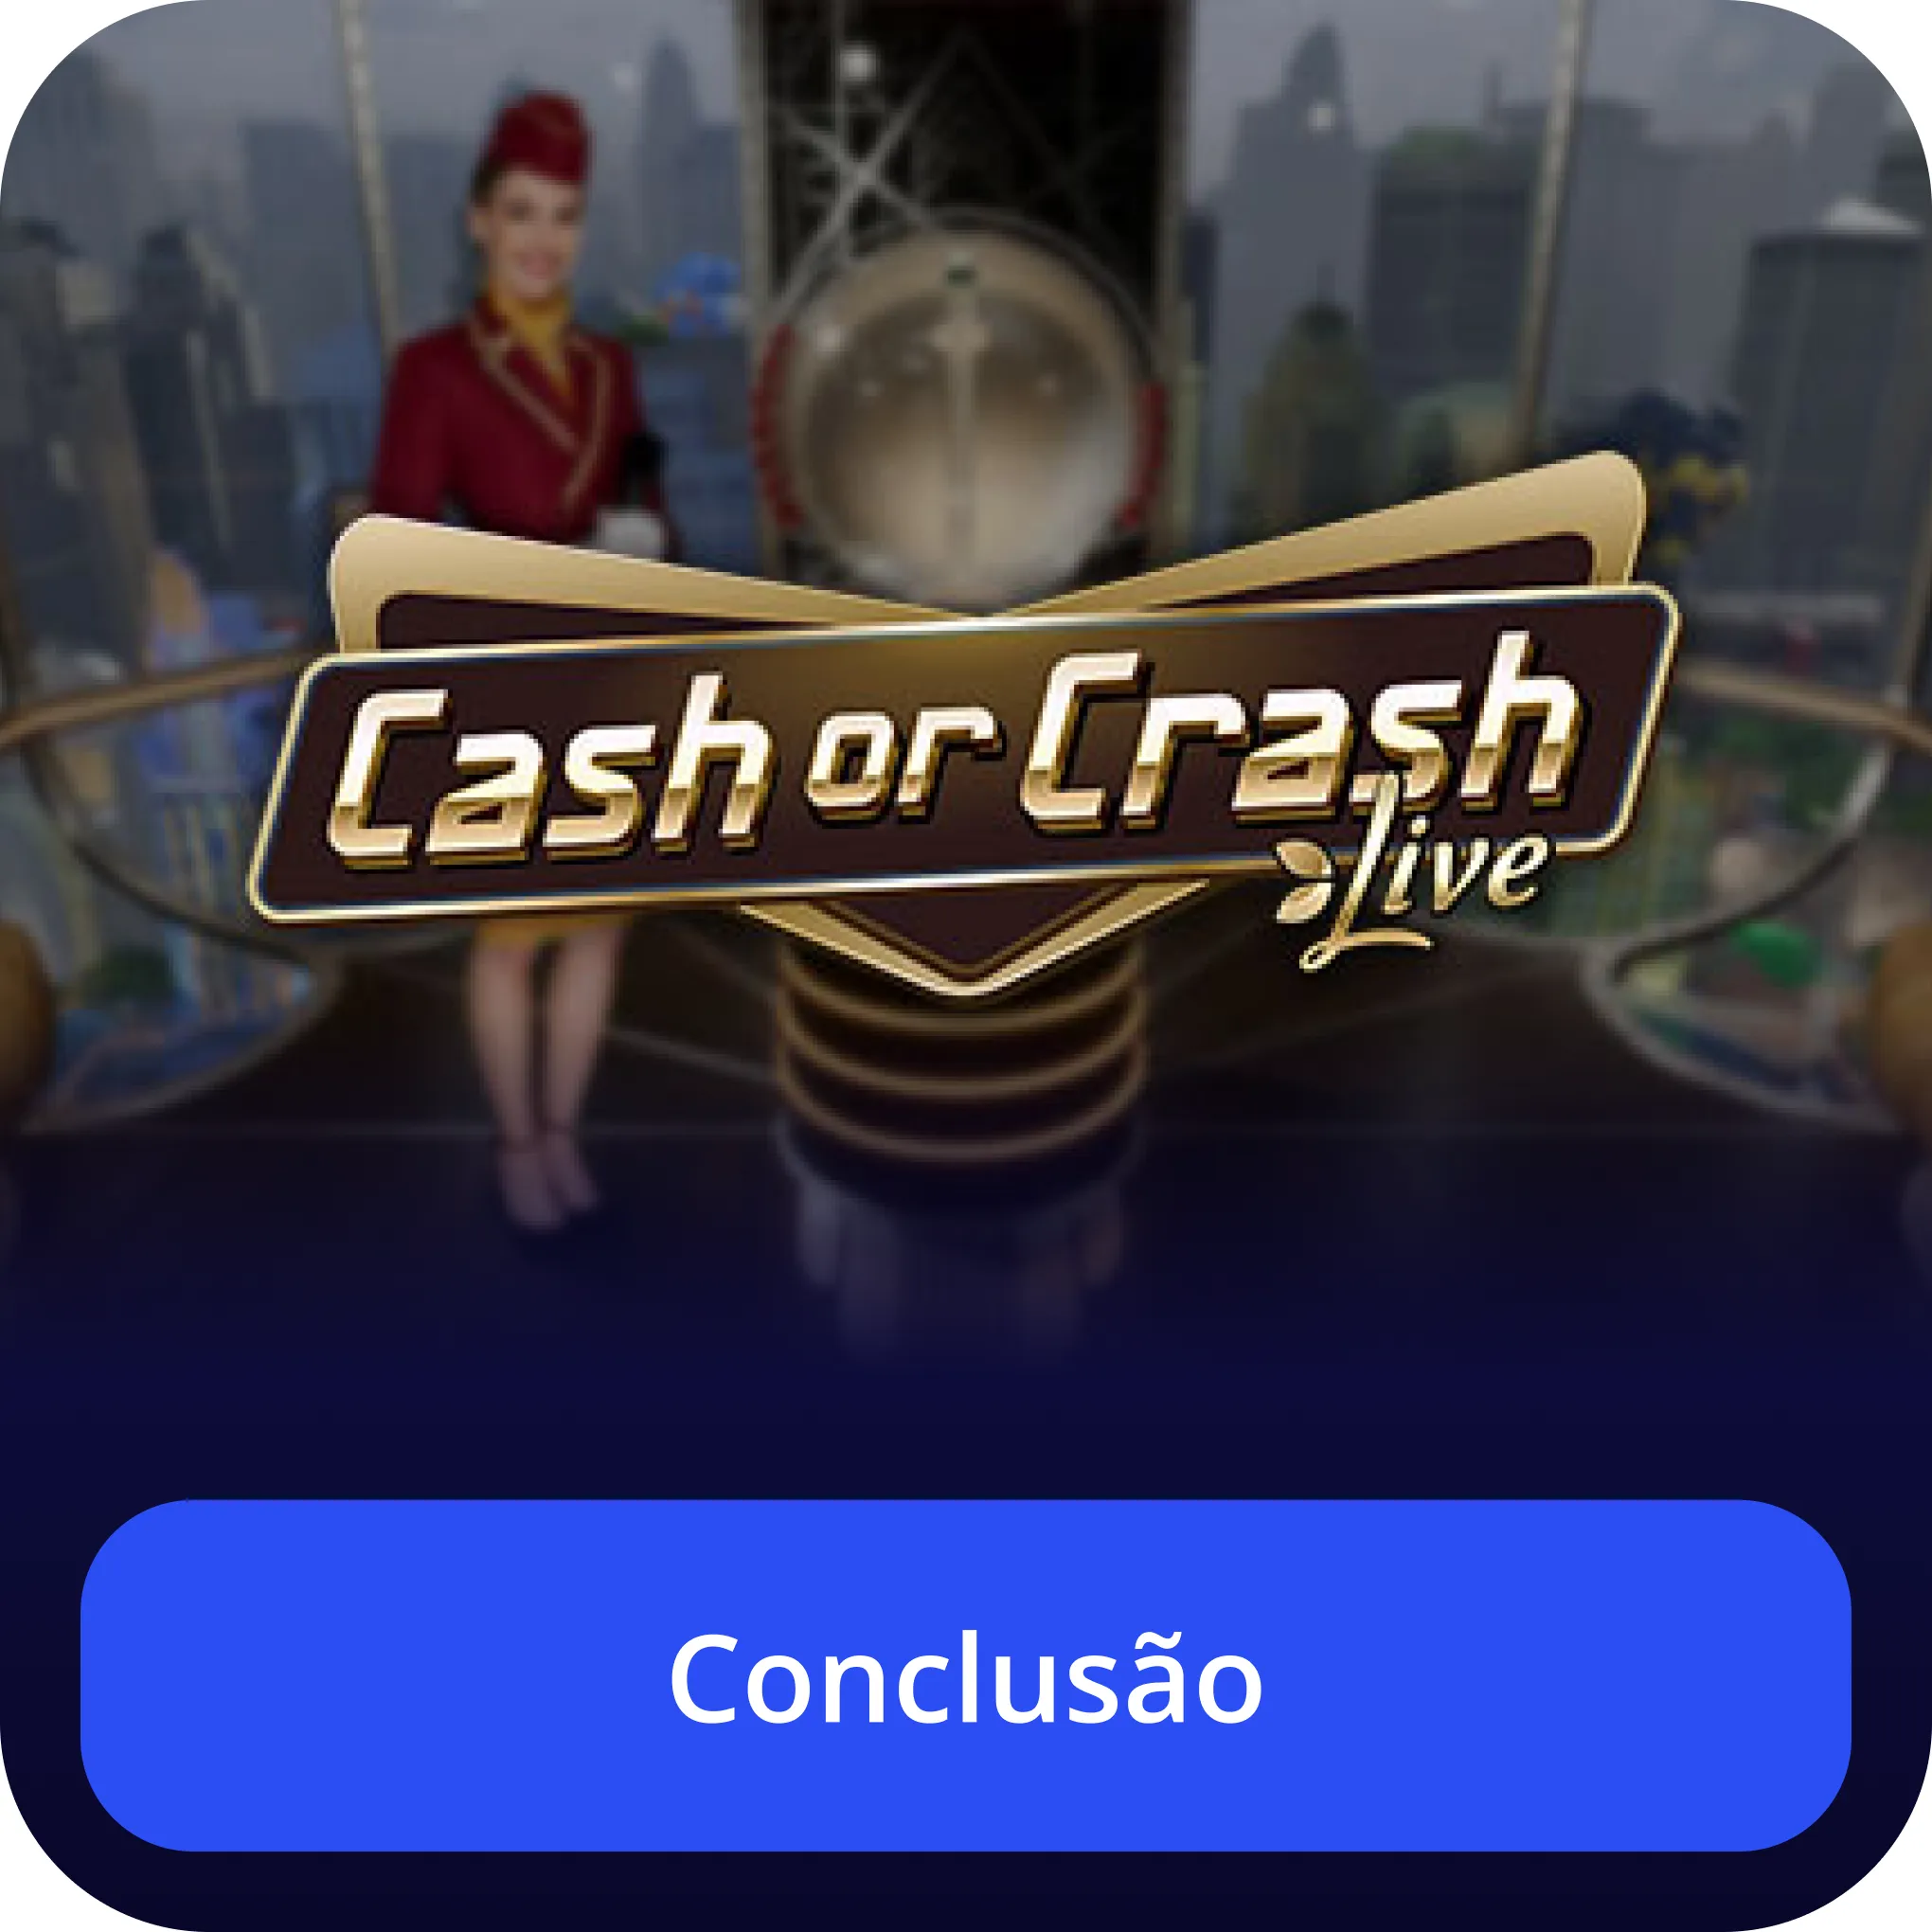 Conclusão cash or crash